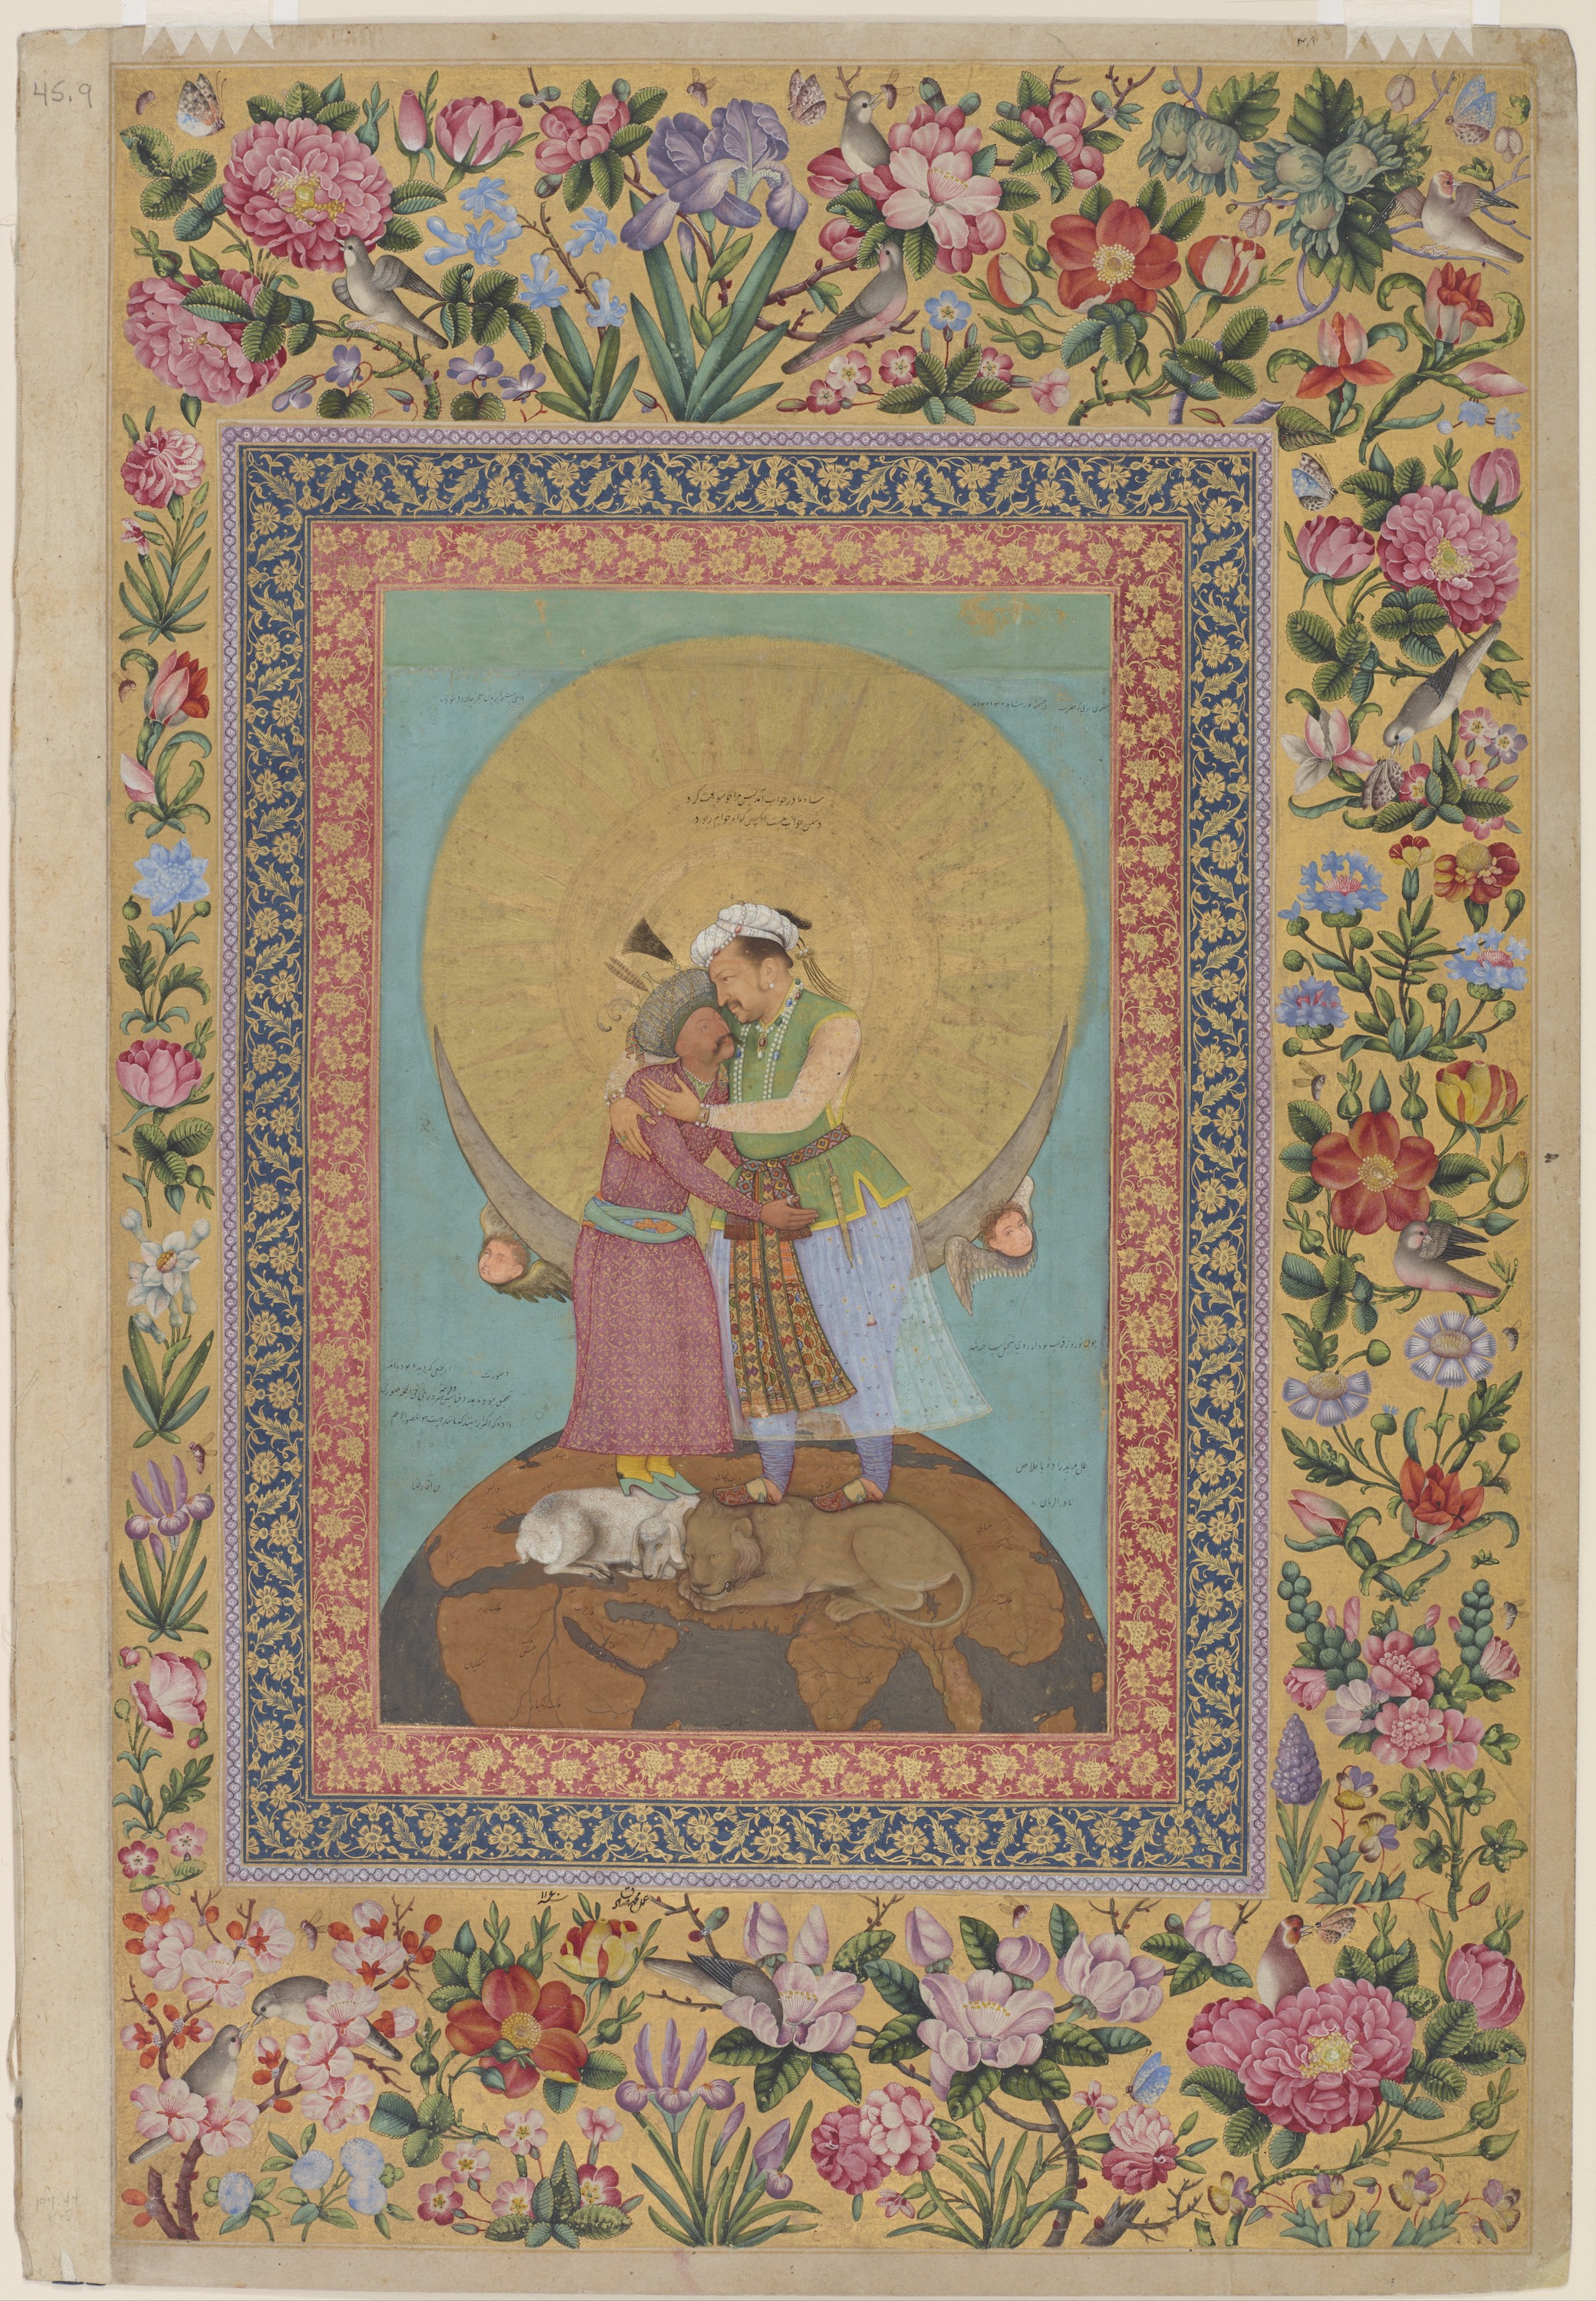 İran İmparatoru Shah Abbas ve Jahangir'in Alegorik Temsili by Ebu & (çerçeve: Muhammed) el-Hasan & (çerçeve: Sadık) - 1618 civarları ; 1747–48 sınırlarında - 9 3/8 x 6 1/16 inç 